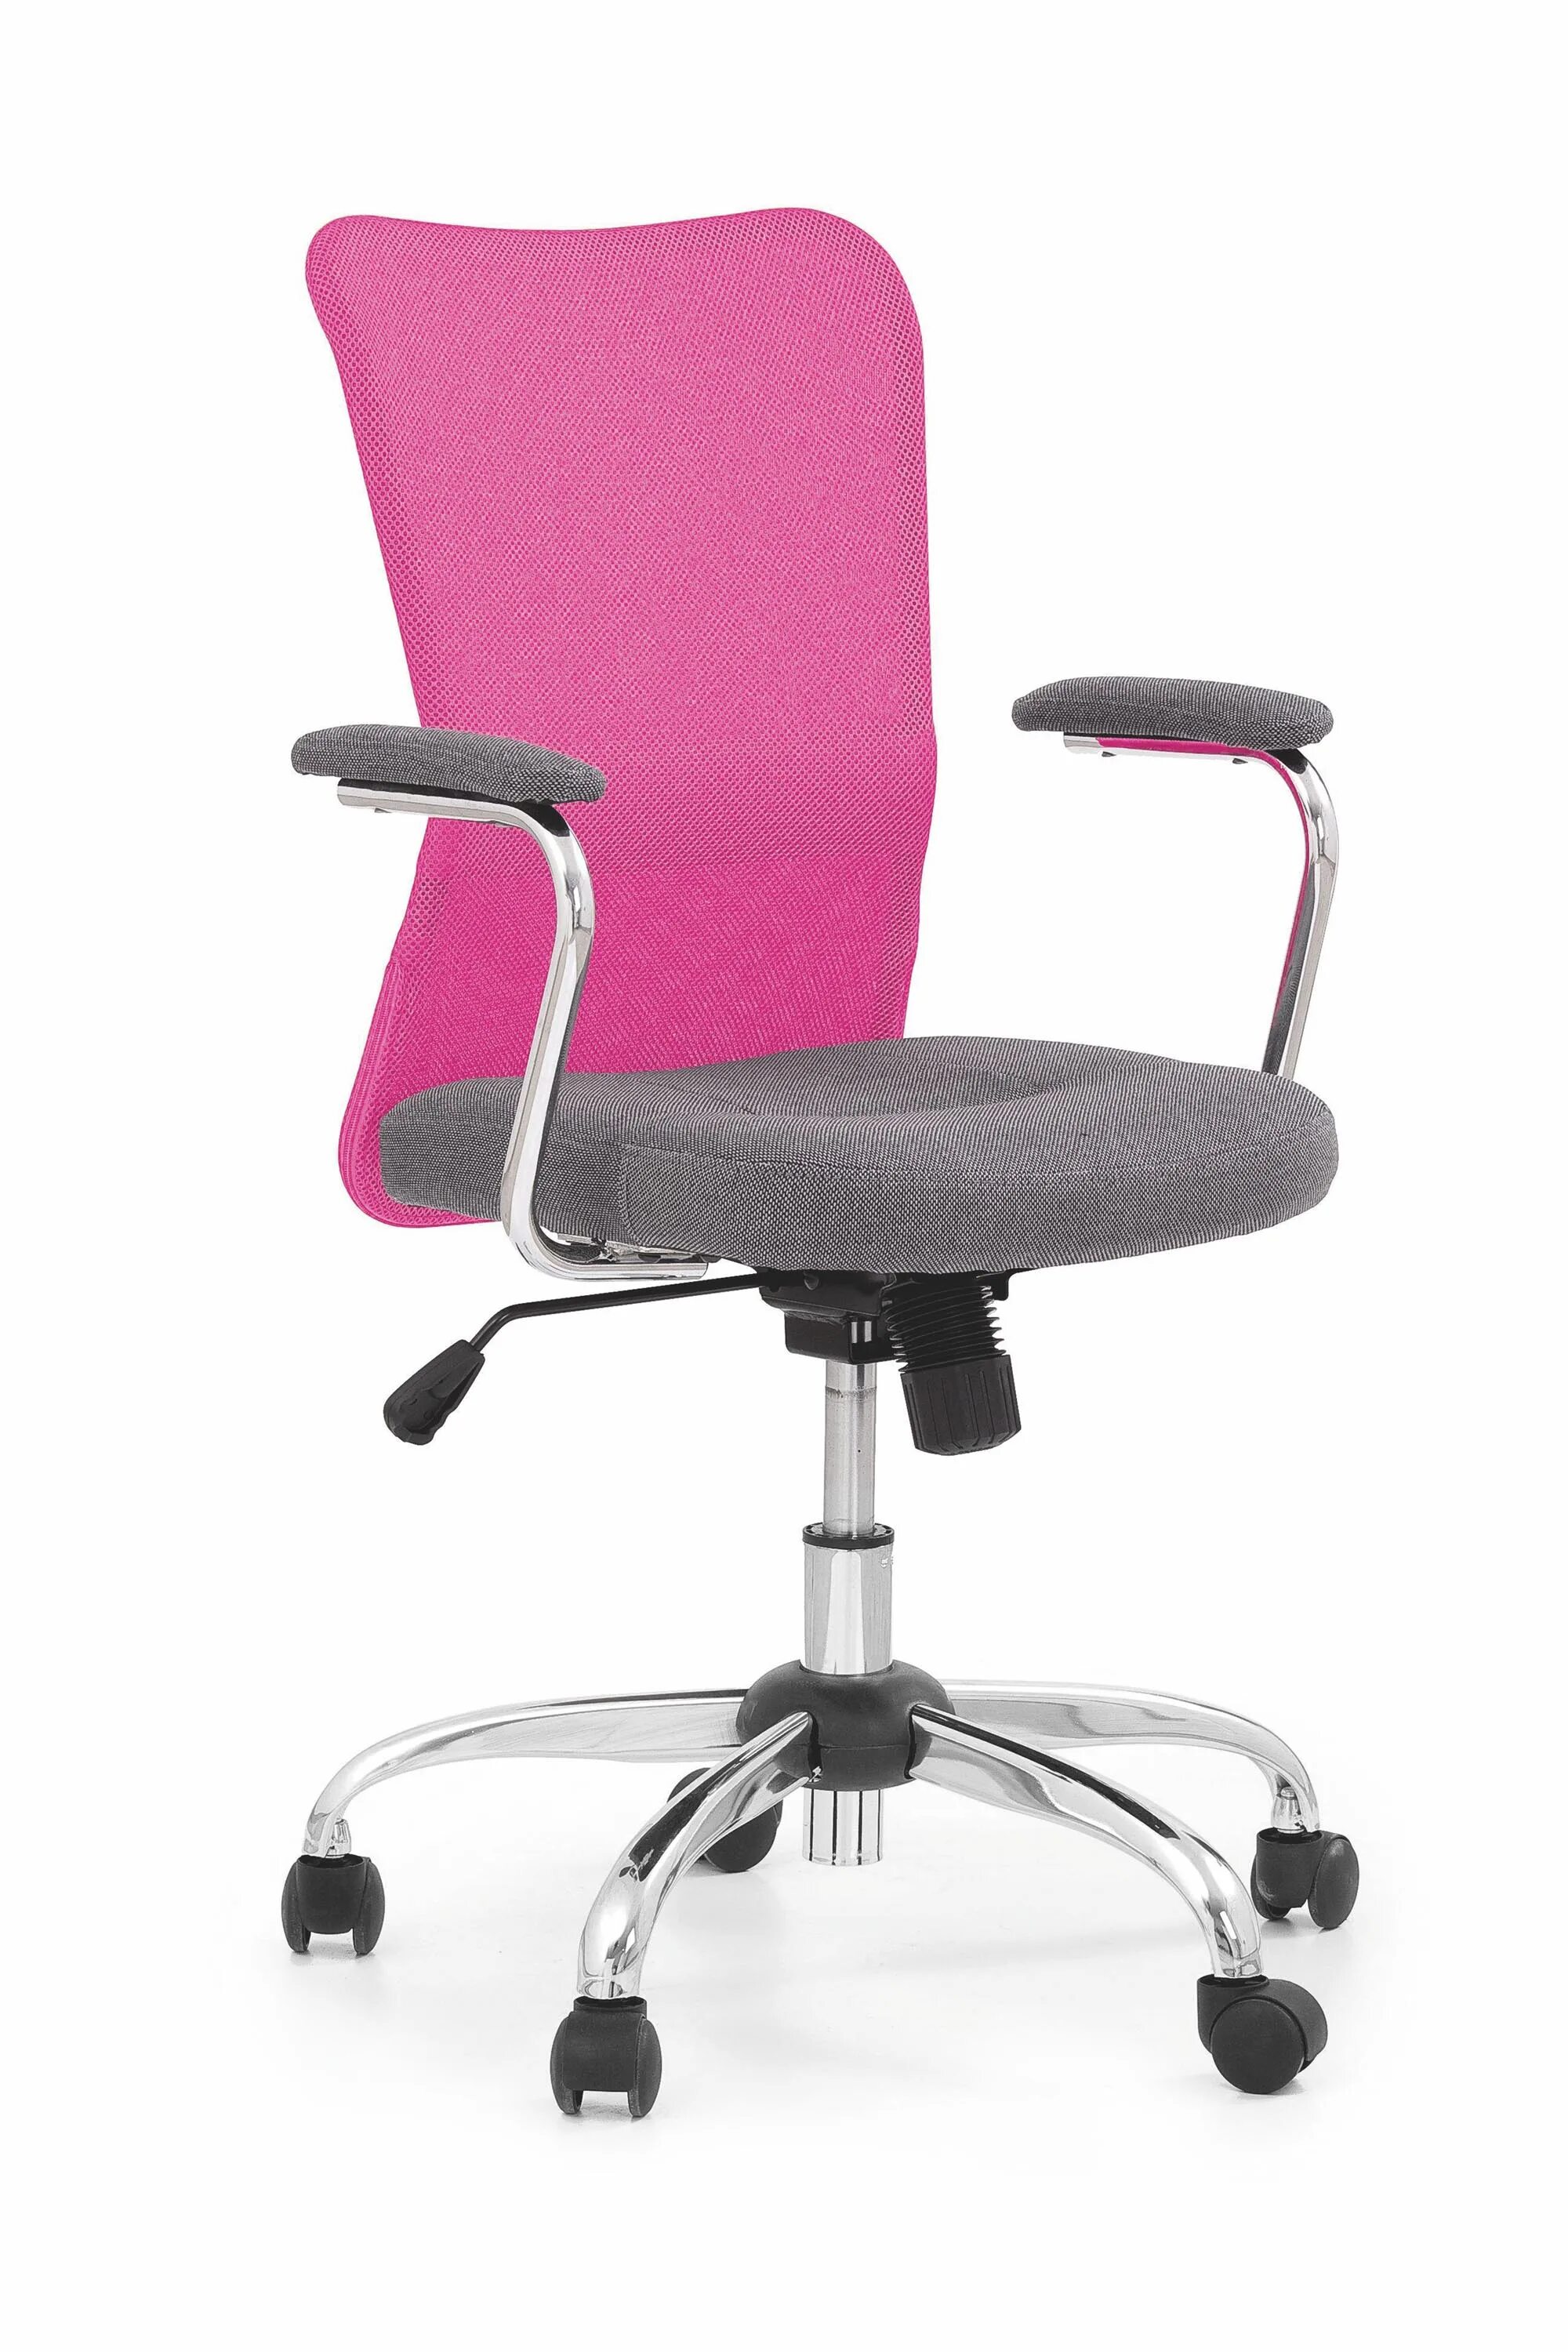 Офисные кресла минске. Кресло офисное Седия Rosio-2. Кресло компьютерное Halmar fresco (розовый. Halmar кресло на колесиках. Кресло компьютерное BM 526.